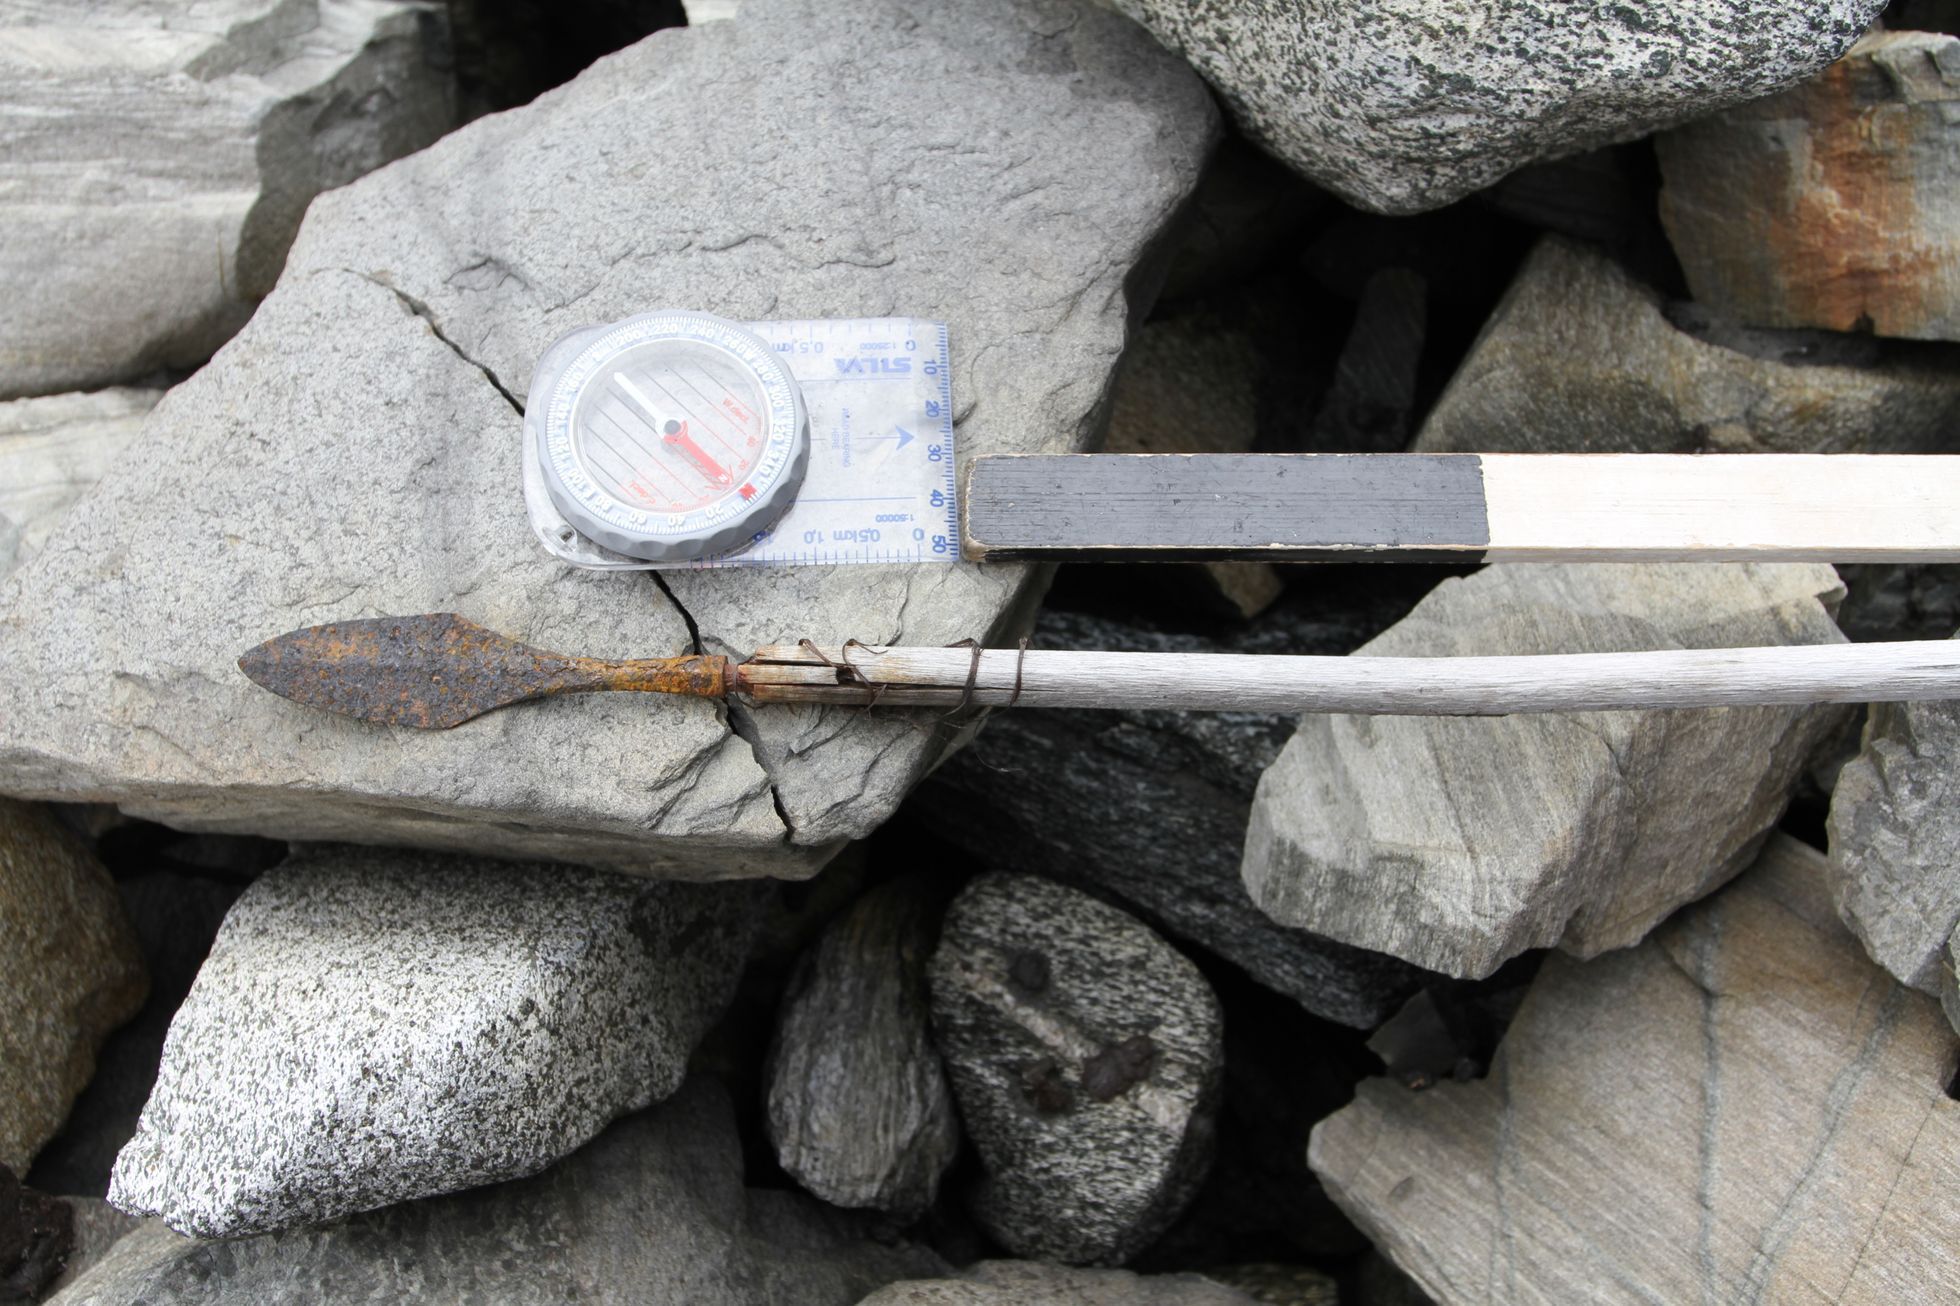 ledovec průsmyk norsko archeologický nález artefakty vikingové